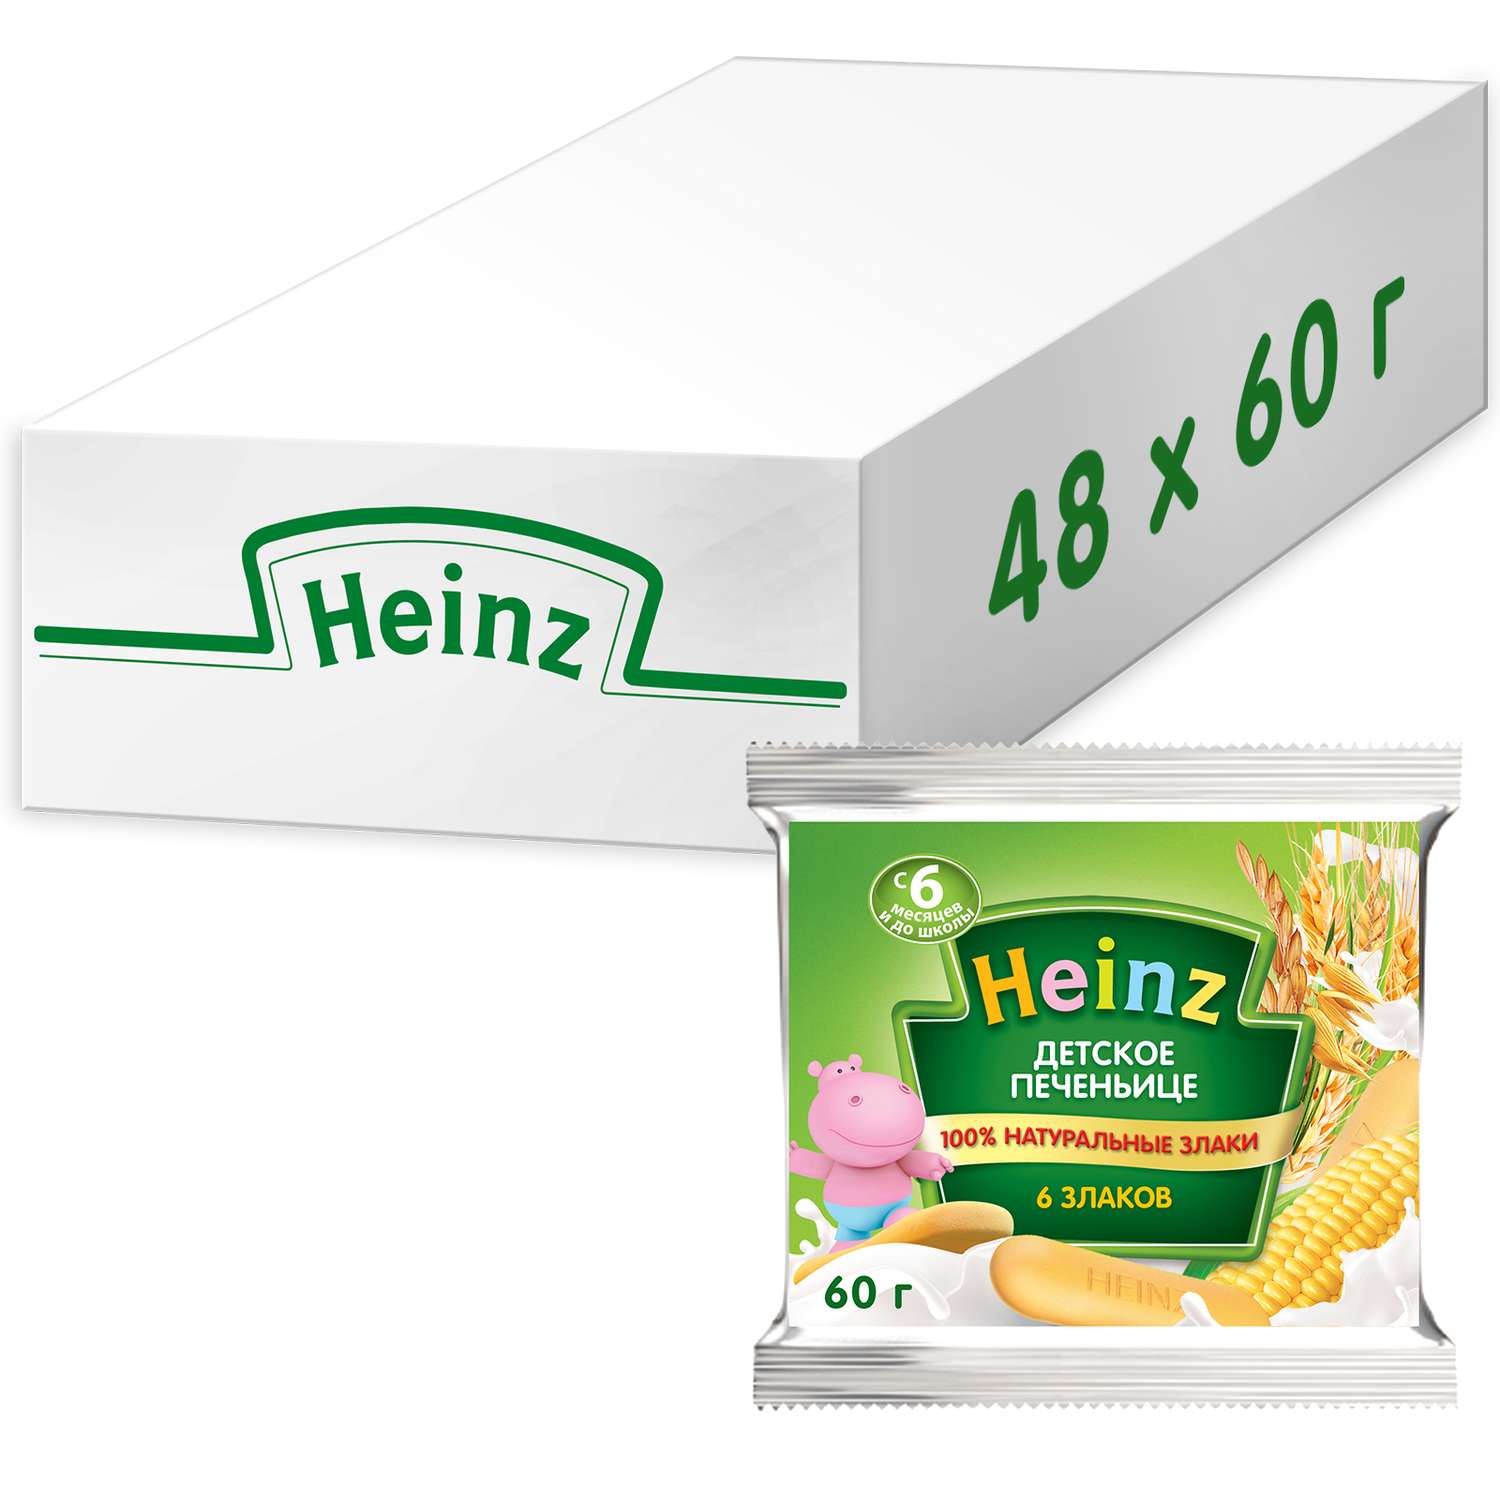 Печенье Heinz 6 злаков 60г - фото 5